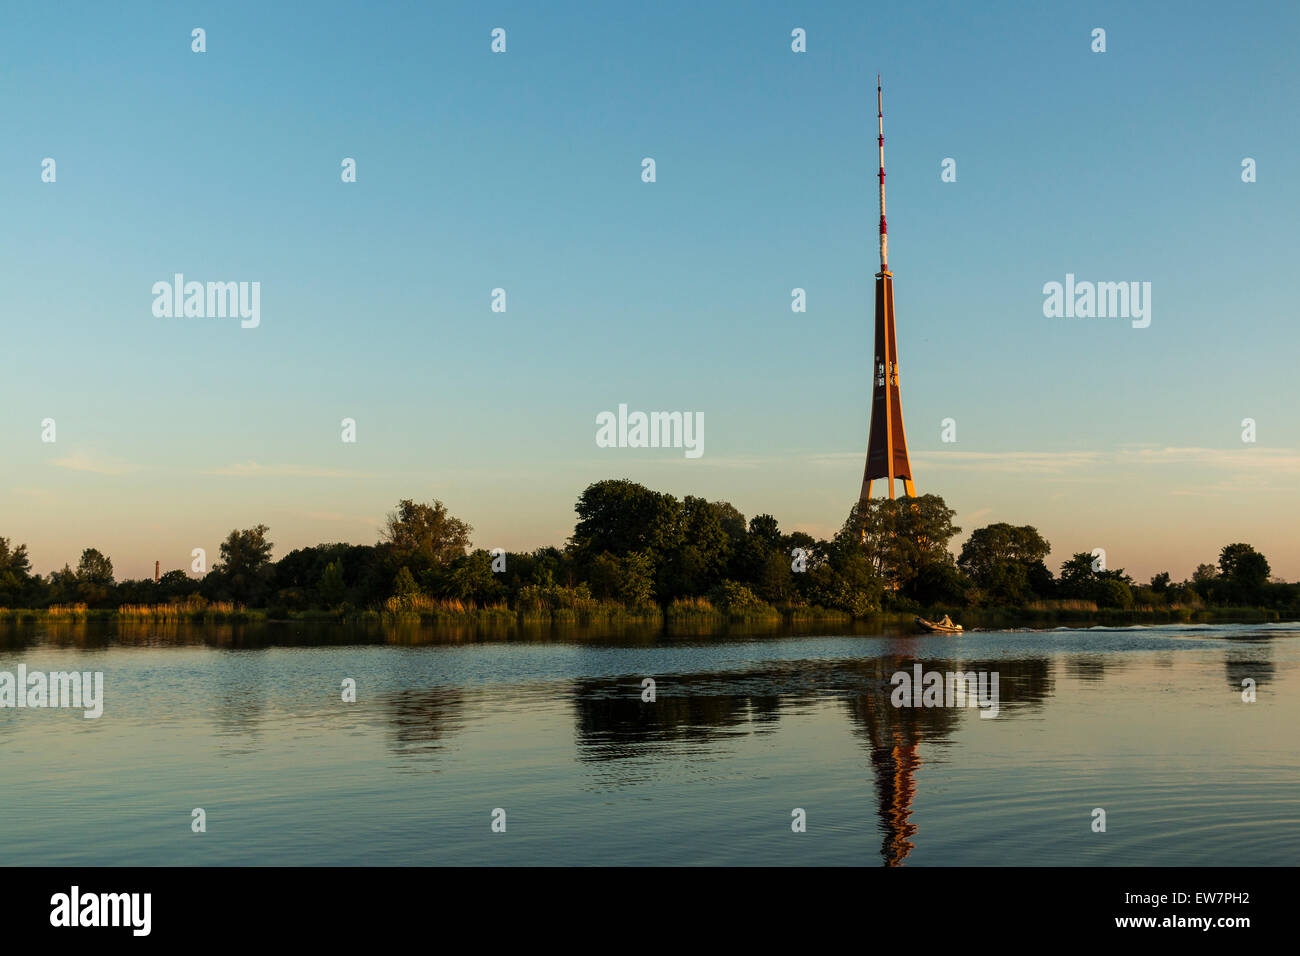 Daugava River And TV Tower In Riga, Latvia Stock Photo